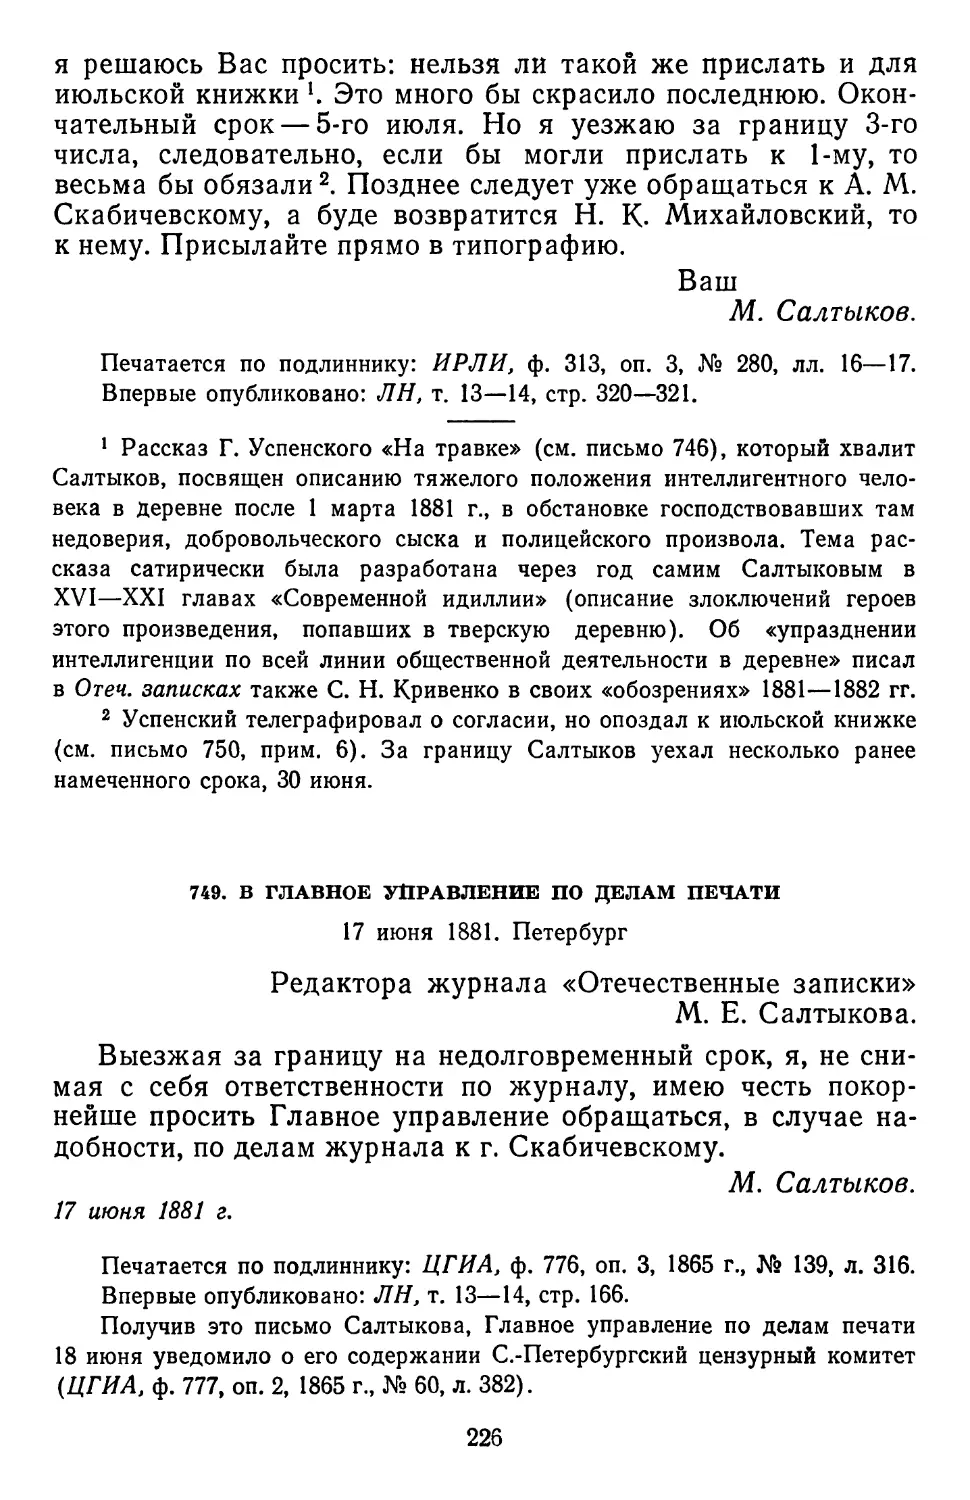 749.ВГлавное управление по делам печати. 17 июня 1881. Петербург